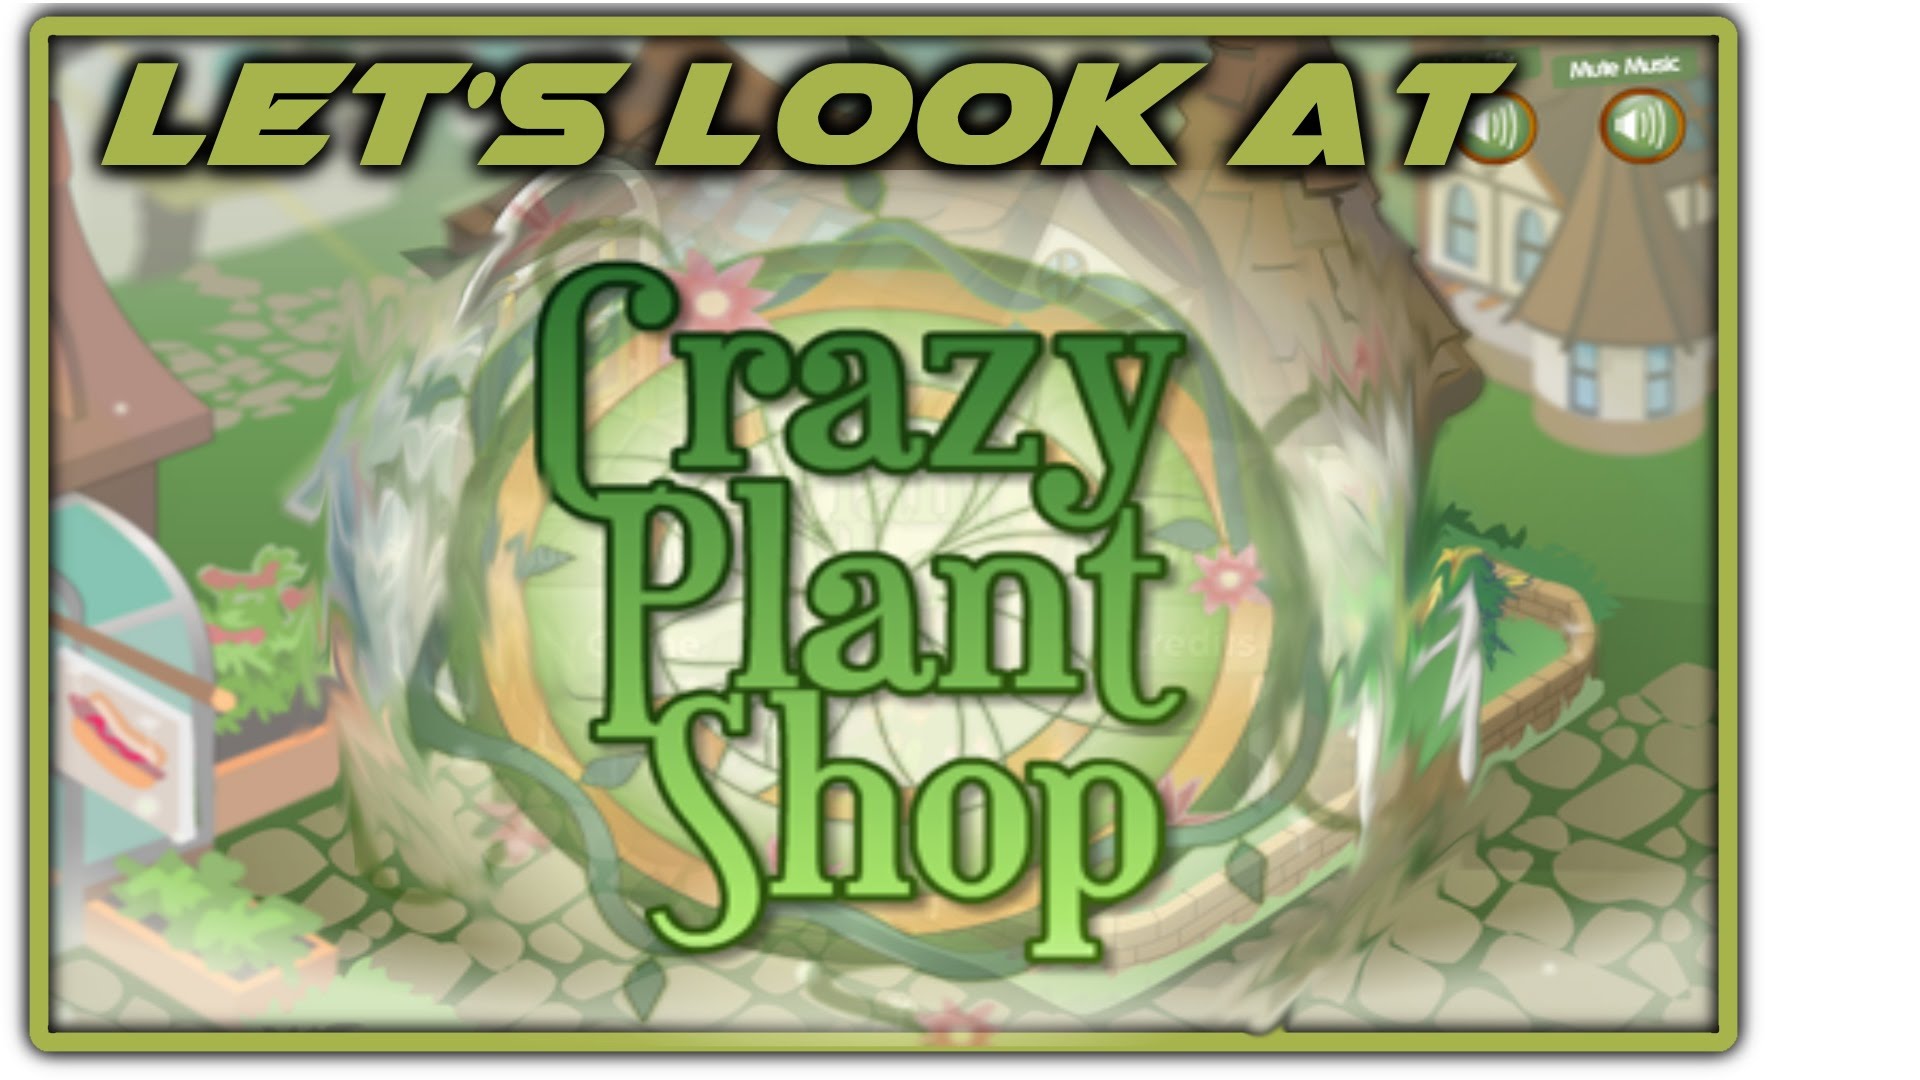 Crazy Plant Shop #21